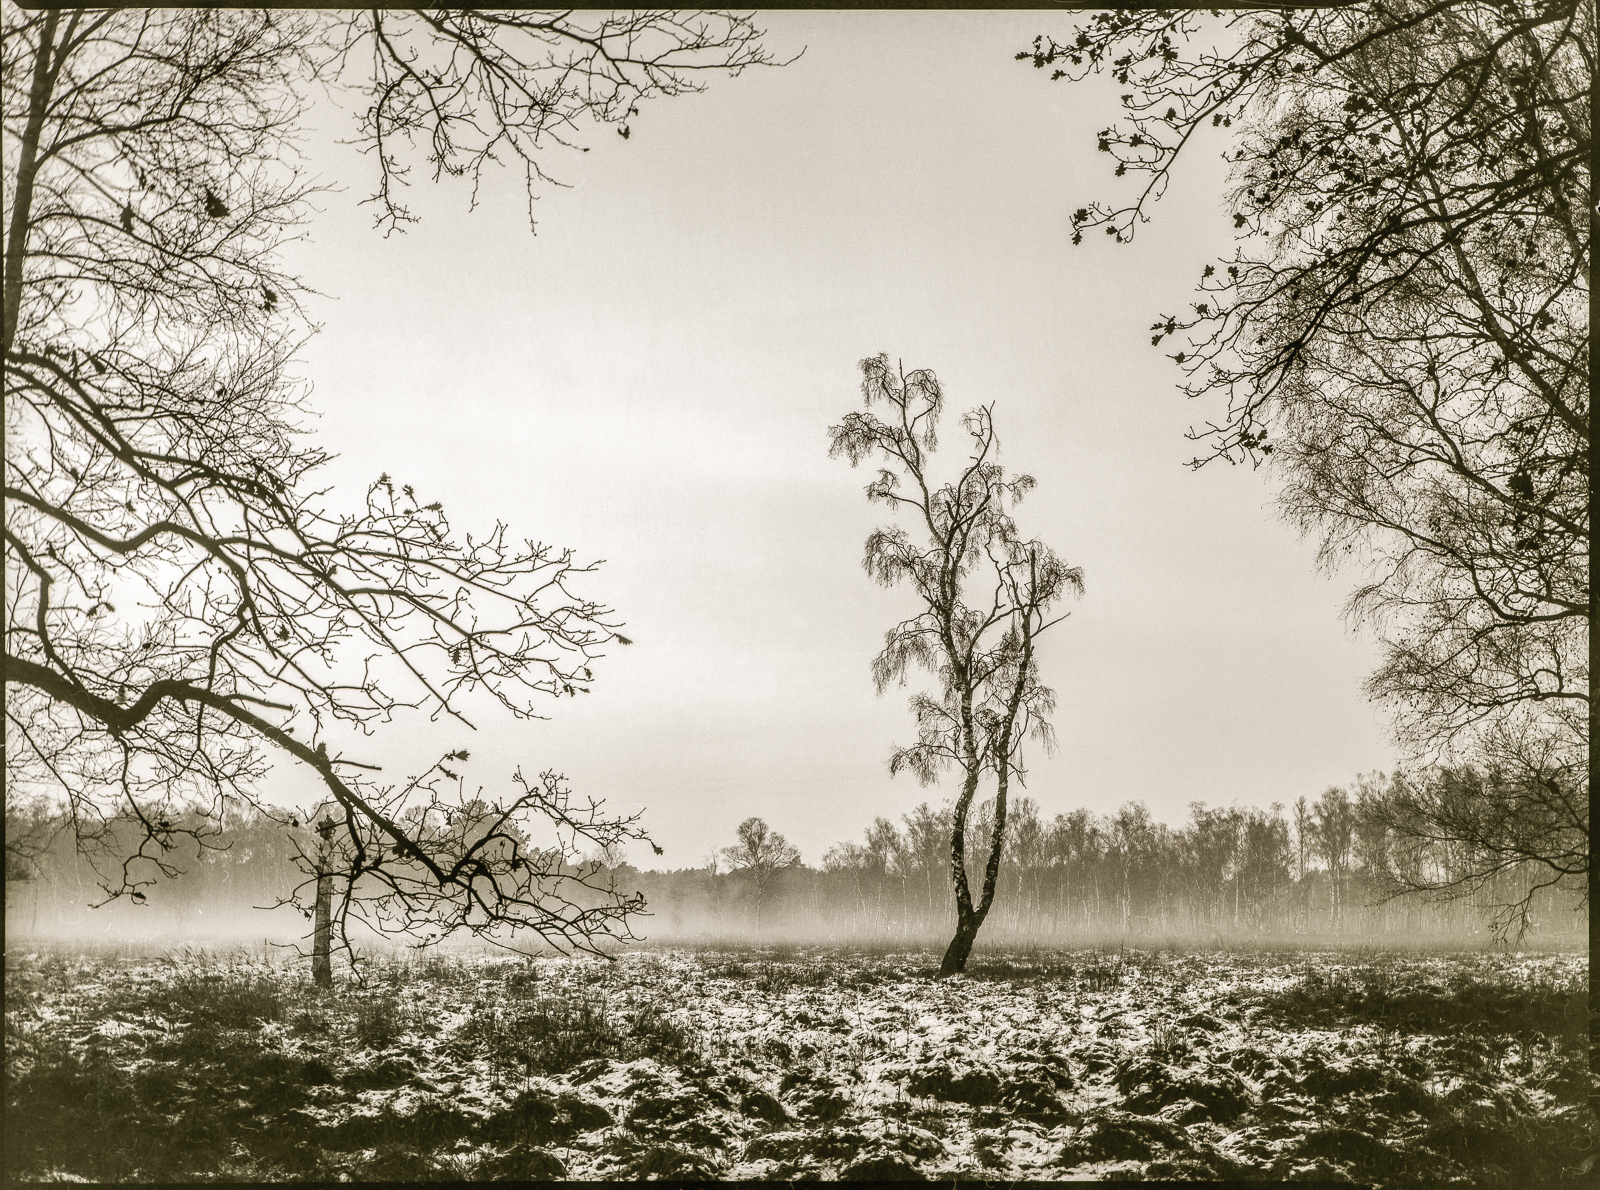 SchwarzWeißFoto: Eine Birke auf einer mit Schnee bedeckten Freifläche, aufgenommen durch eine Lücke zwischen anderen Bäumen. Der Himmel ist ohne Struktur, am Horizont zieht ein Streifen Nebel auf.